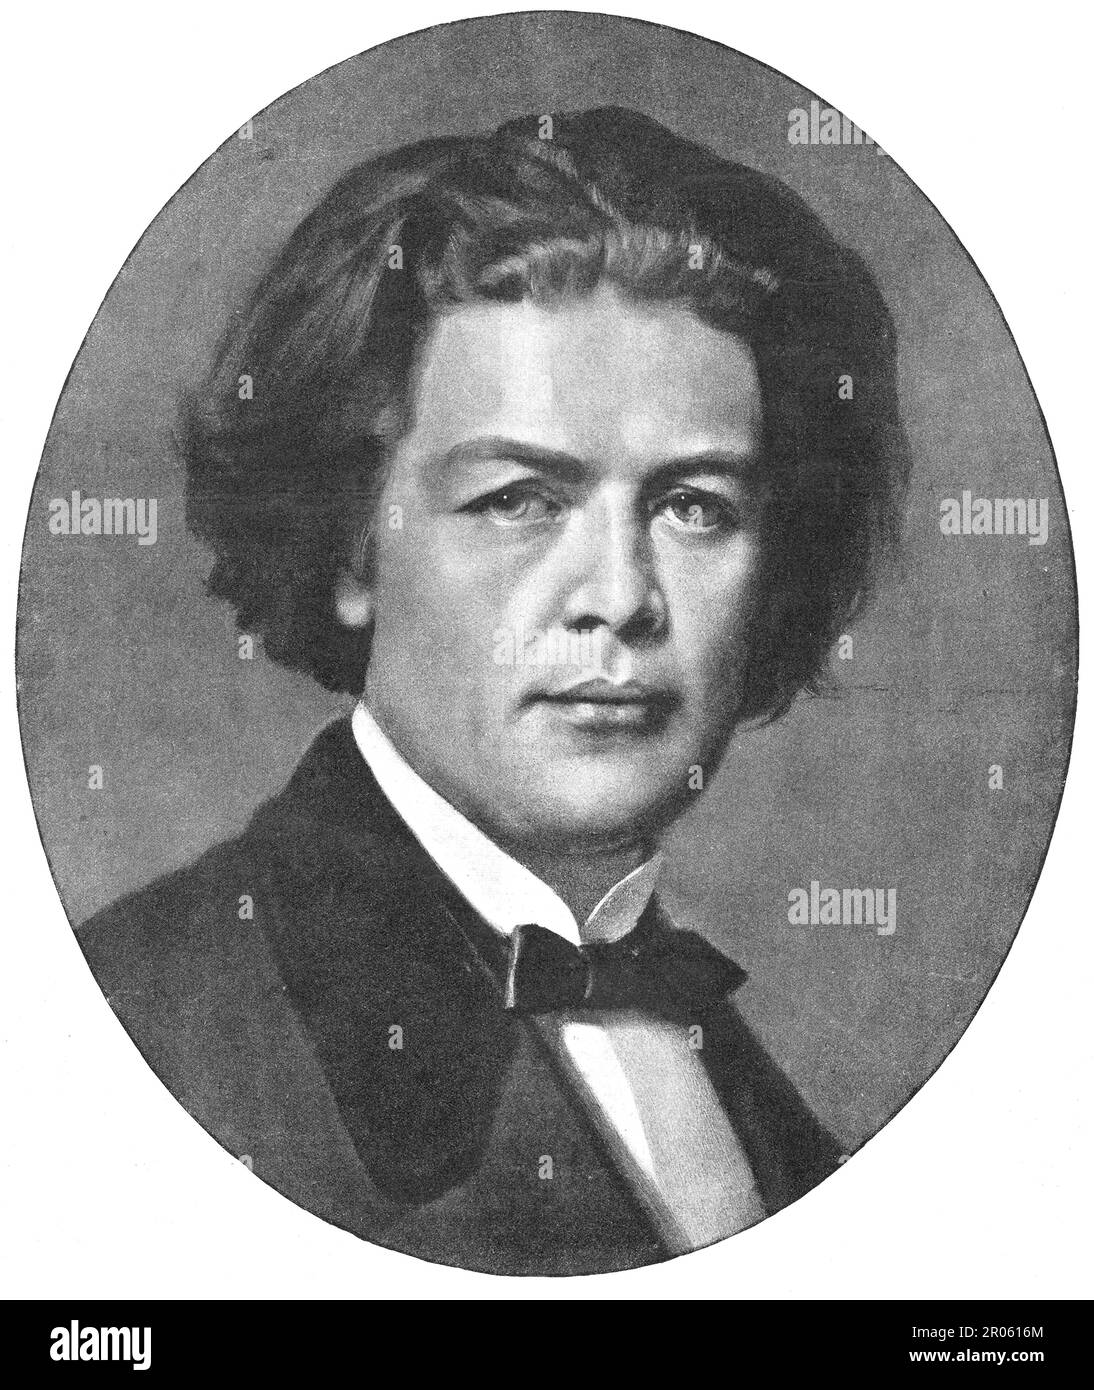 Anton Rubinstein. Anton Grigoryevitch Rubinstein (1829 – 1894) est un pianiste, compositeur et chef d'orchestre russe qui devint une figure pivot de la culture russe lorsqu'il fonda le Conservatoire de Saint-Pétersbourg. Il était le frère aîné de Nikolai Rubinstein, qui fonda le Conservatoire de Moscou. Banque D'Images